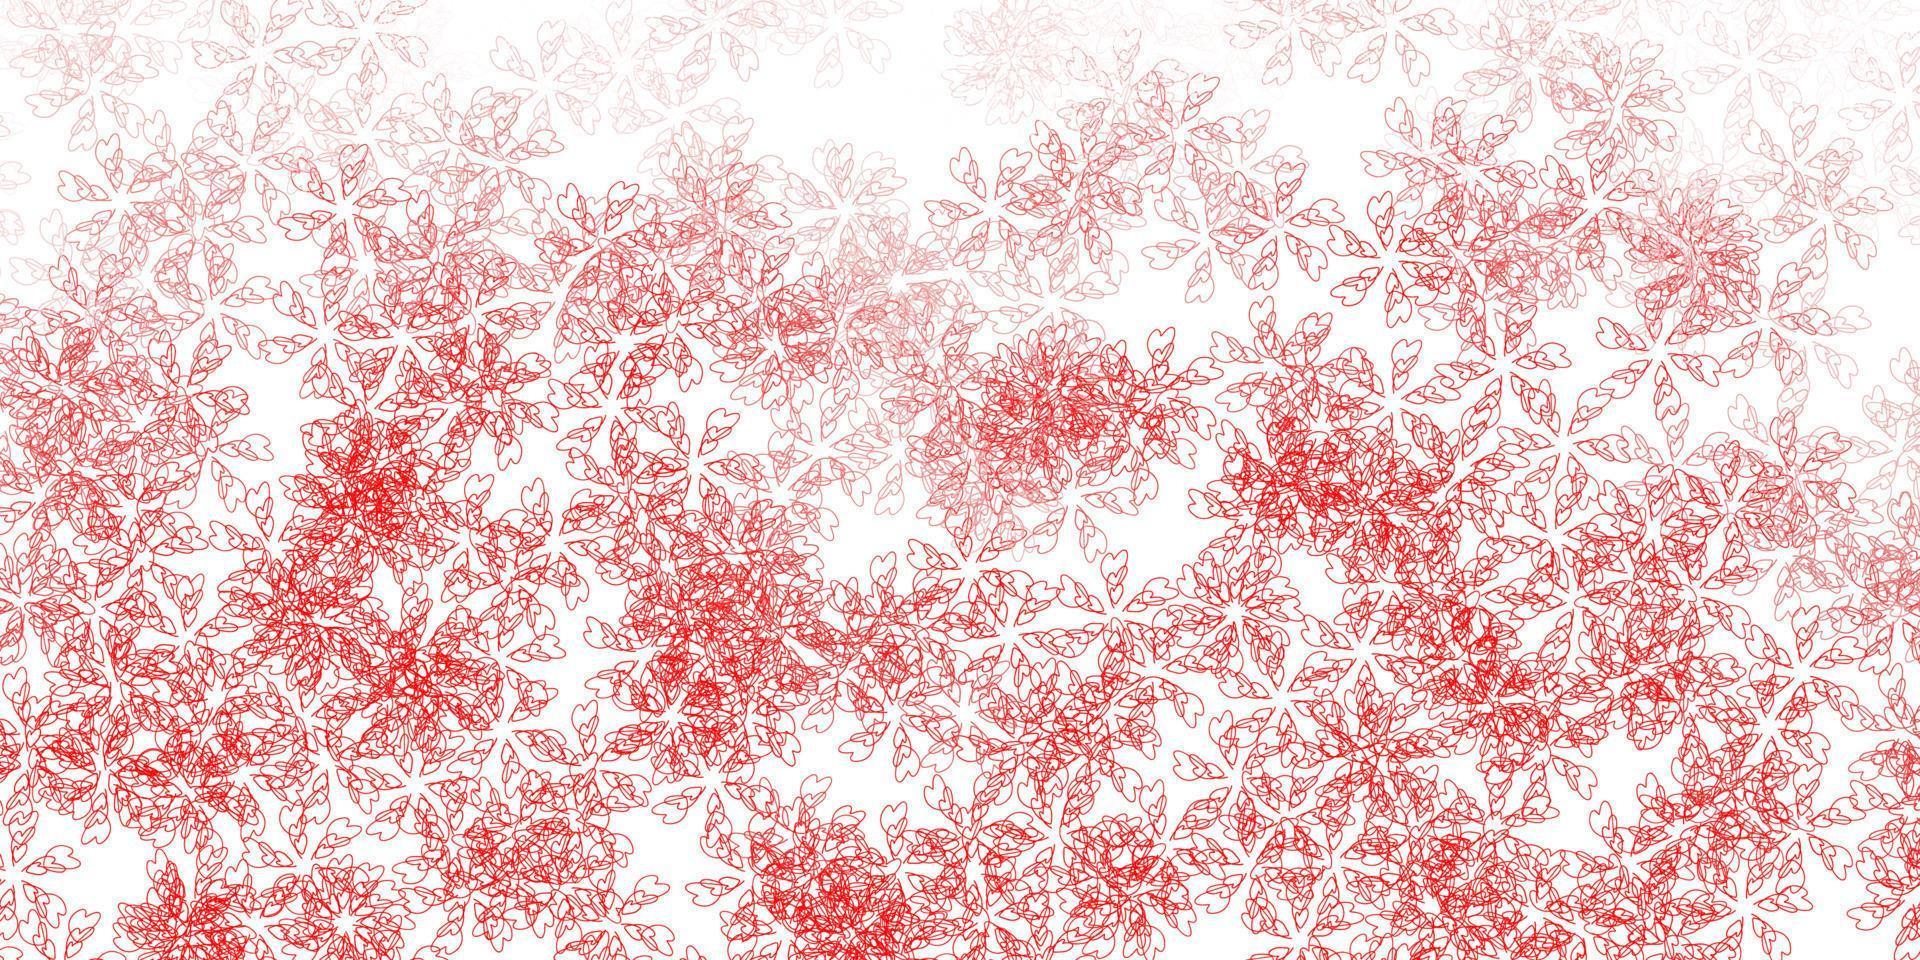 ilustraciones abstractas de vector rojo claro con hojas.